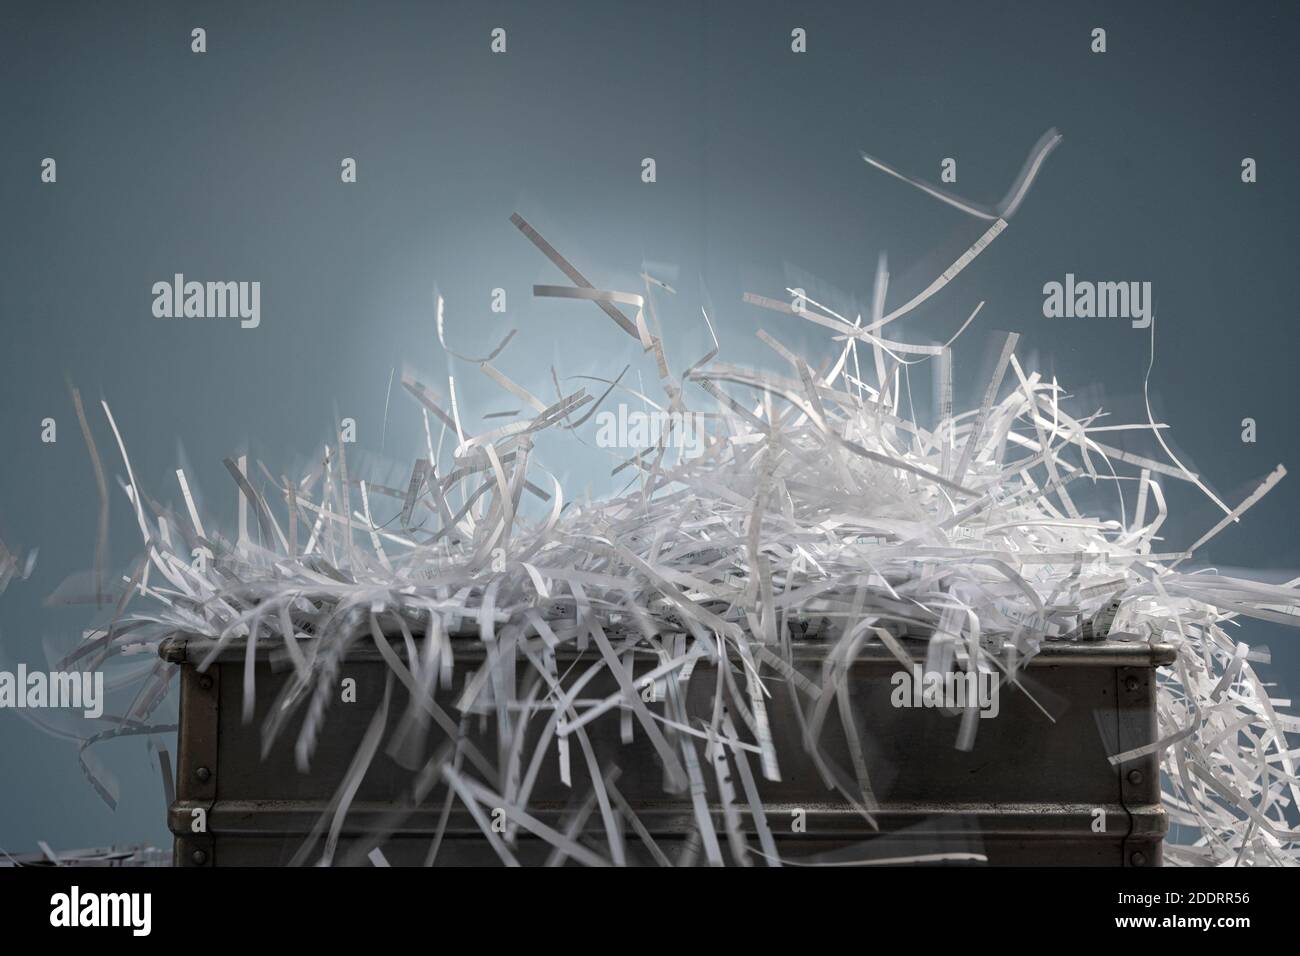 Les rayures de papier déchiquetées semblent exploser dans une boîte et étendre le volume qui s'étend sur le bord de la boîte Banque D'Images